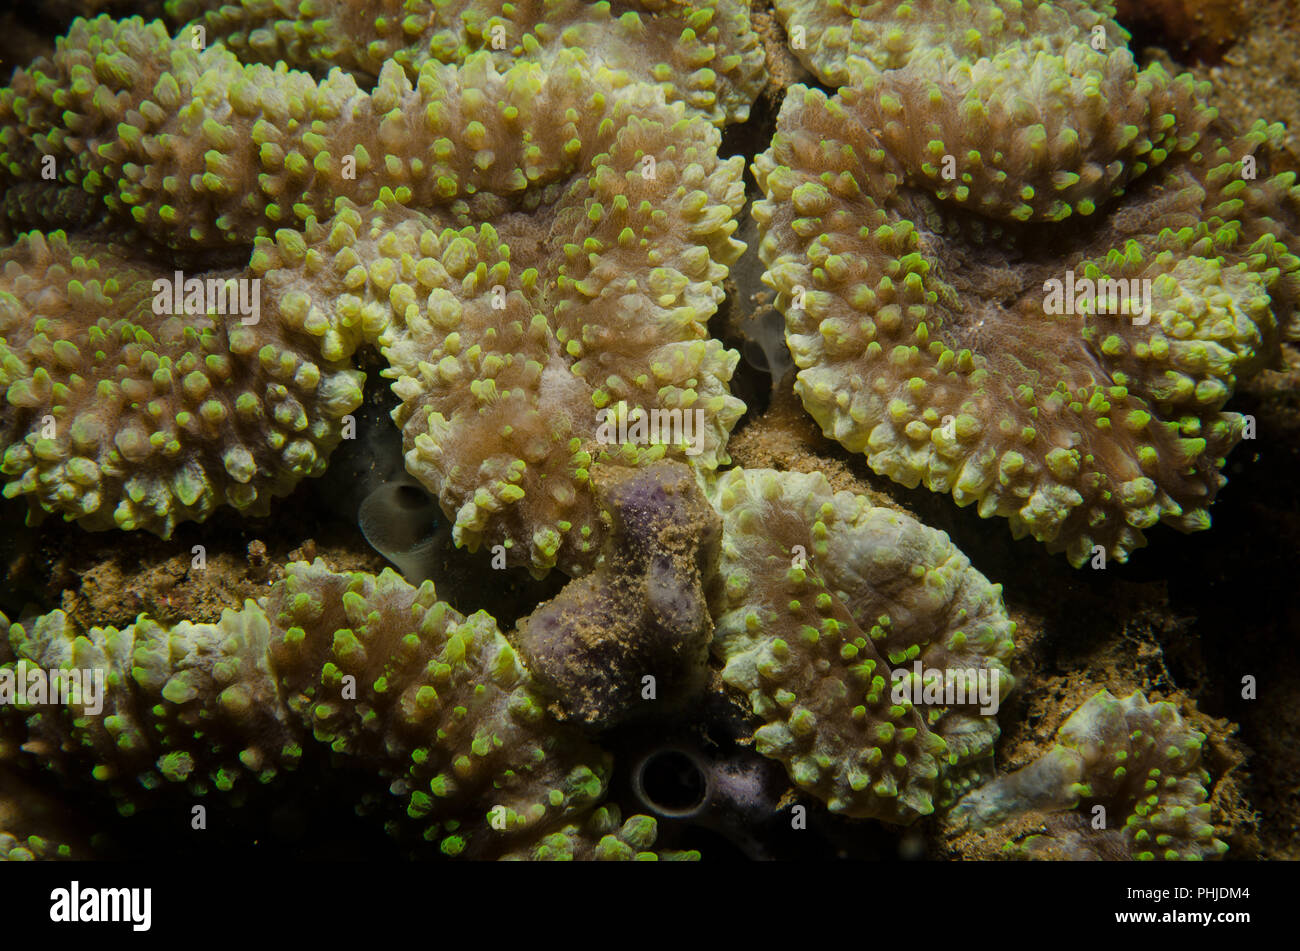 Disk anemone , Discosoma sp., Actinodiscidae, Anilao, Philippines, Batangas, Philippine Sea, Pacific Ocean, Asia Stock Photo